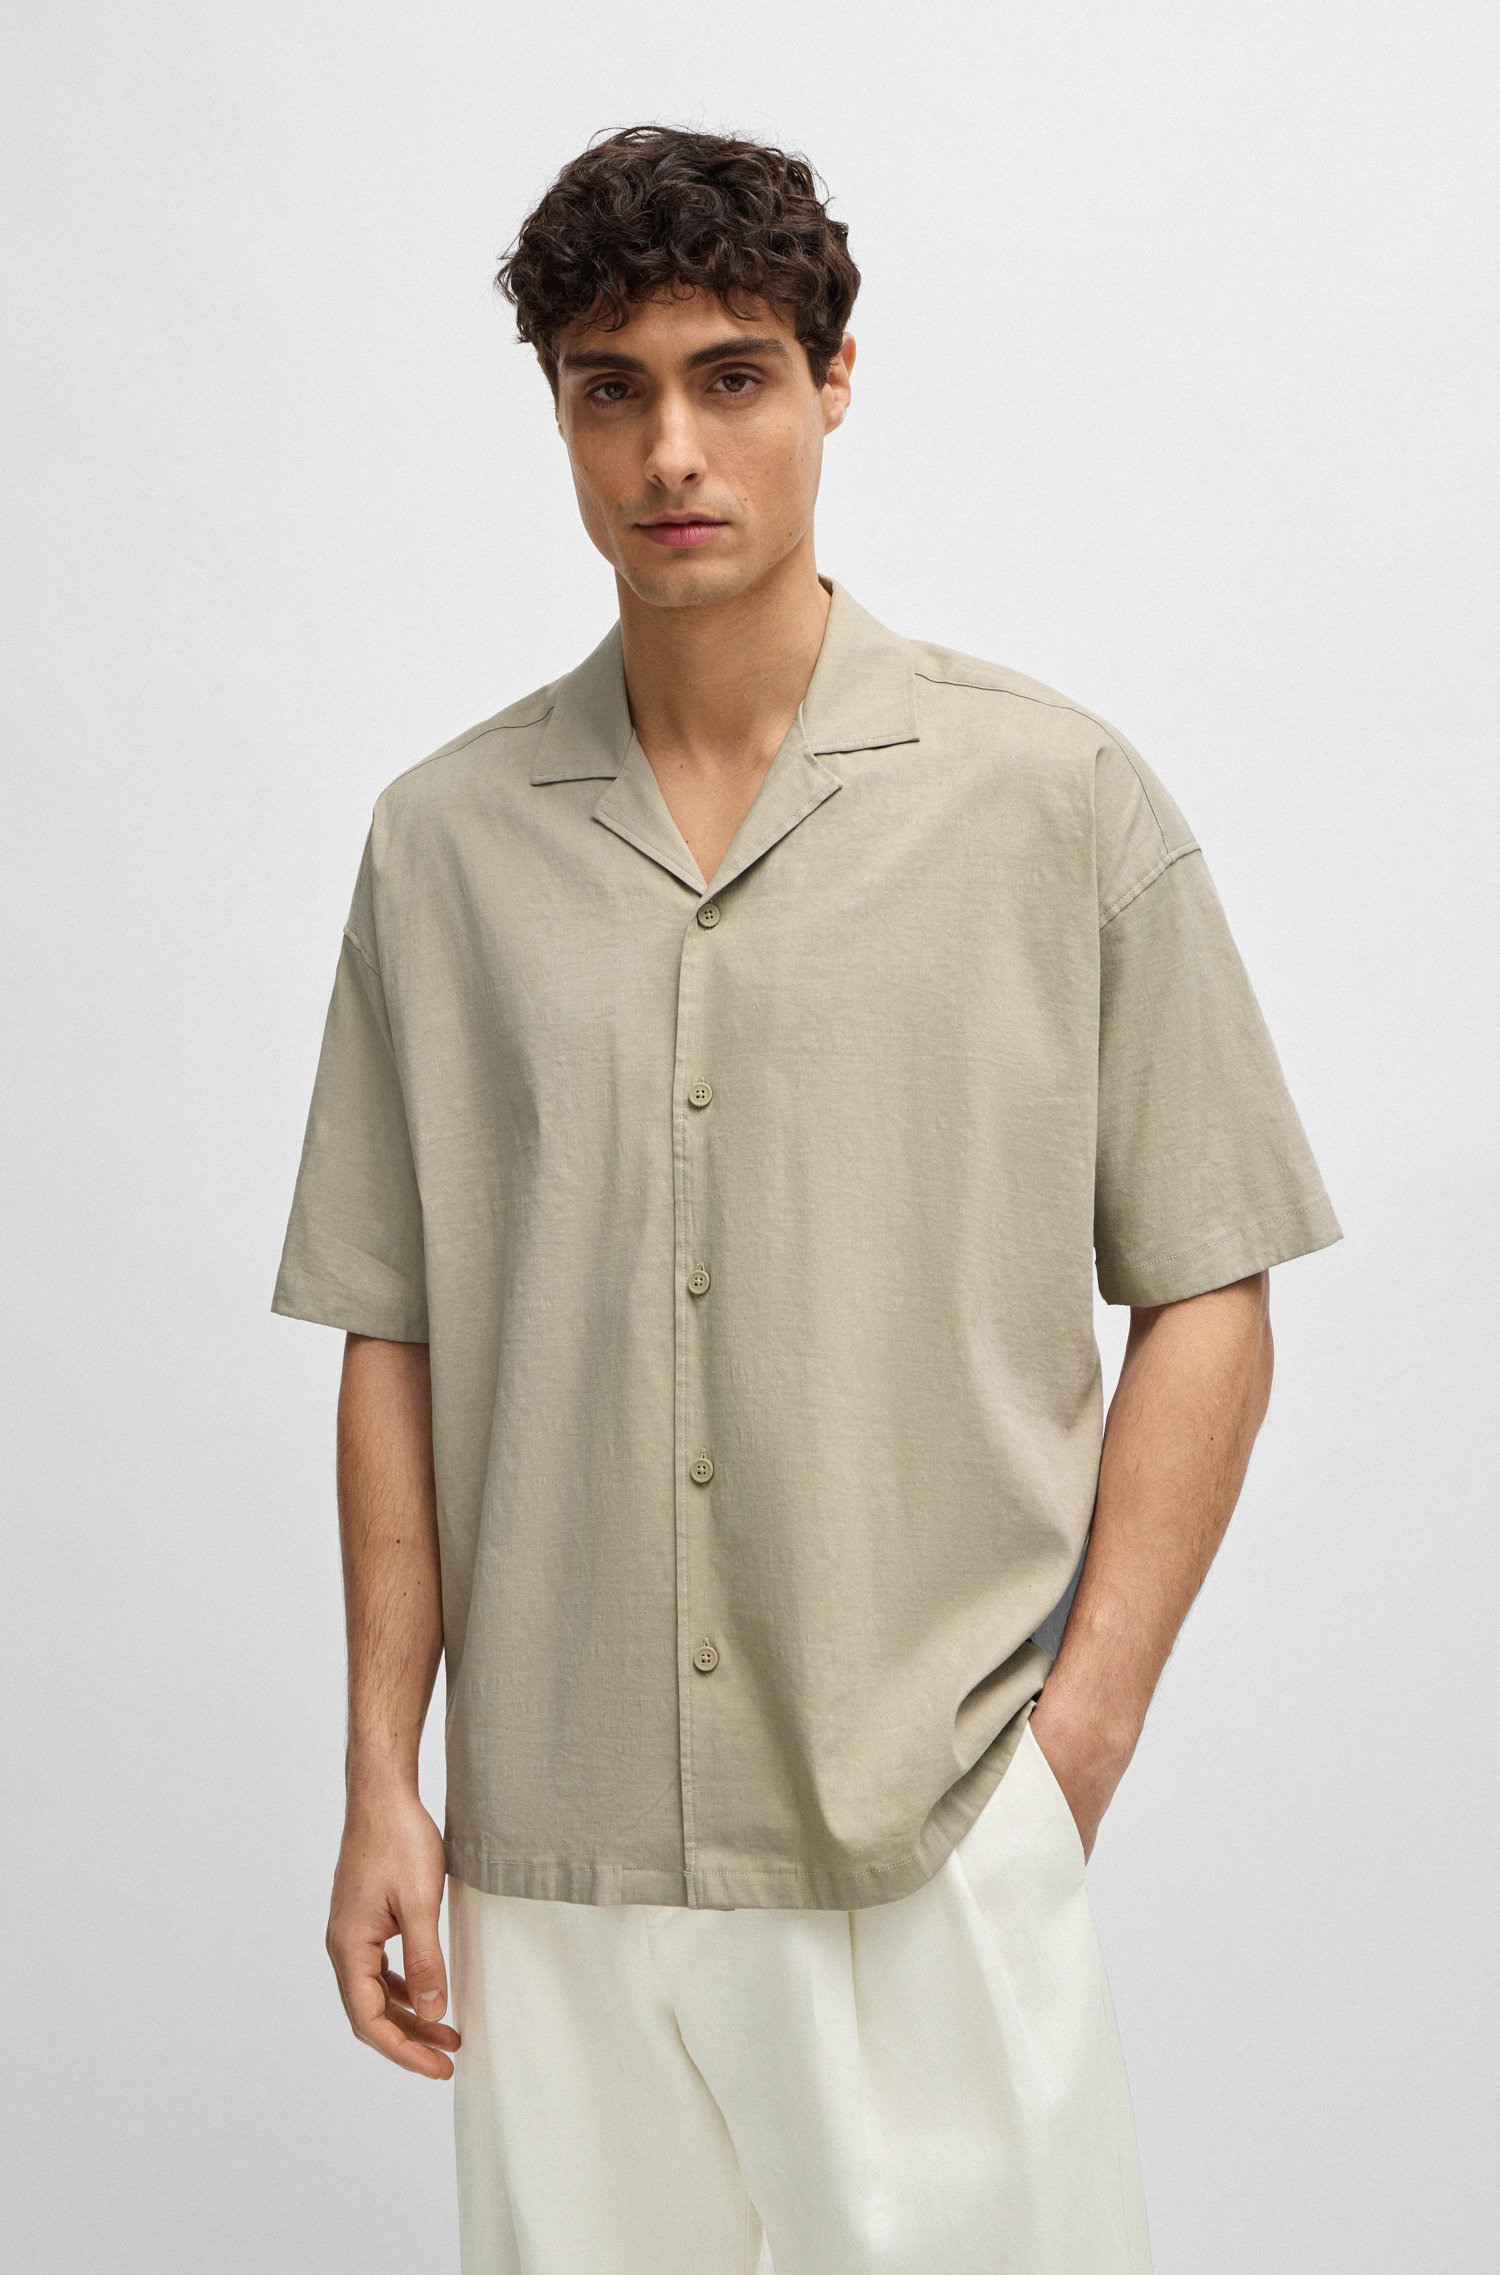 Relaxed-fit shirt a linen blend